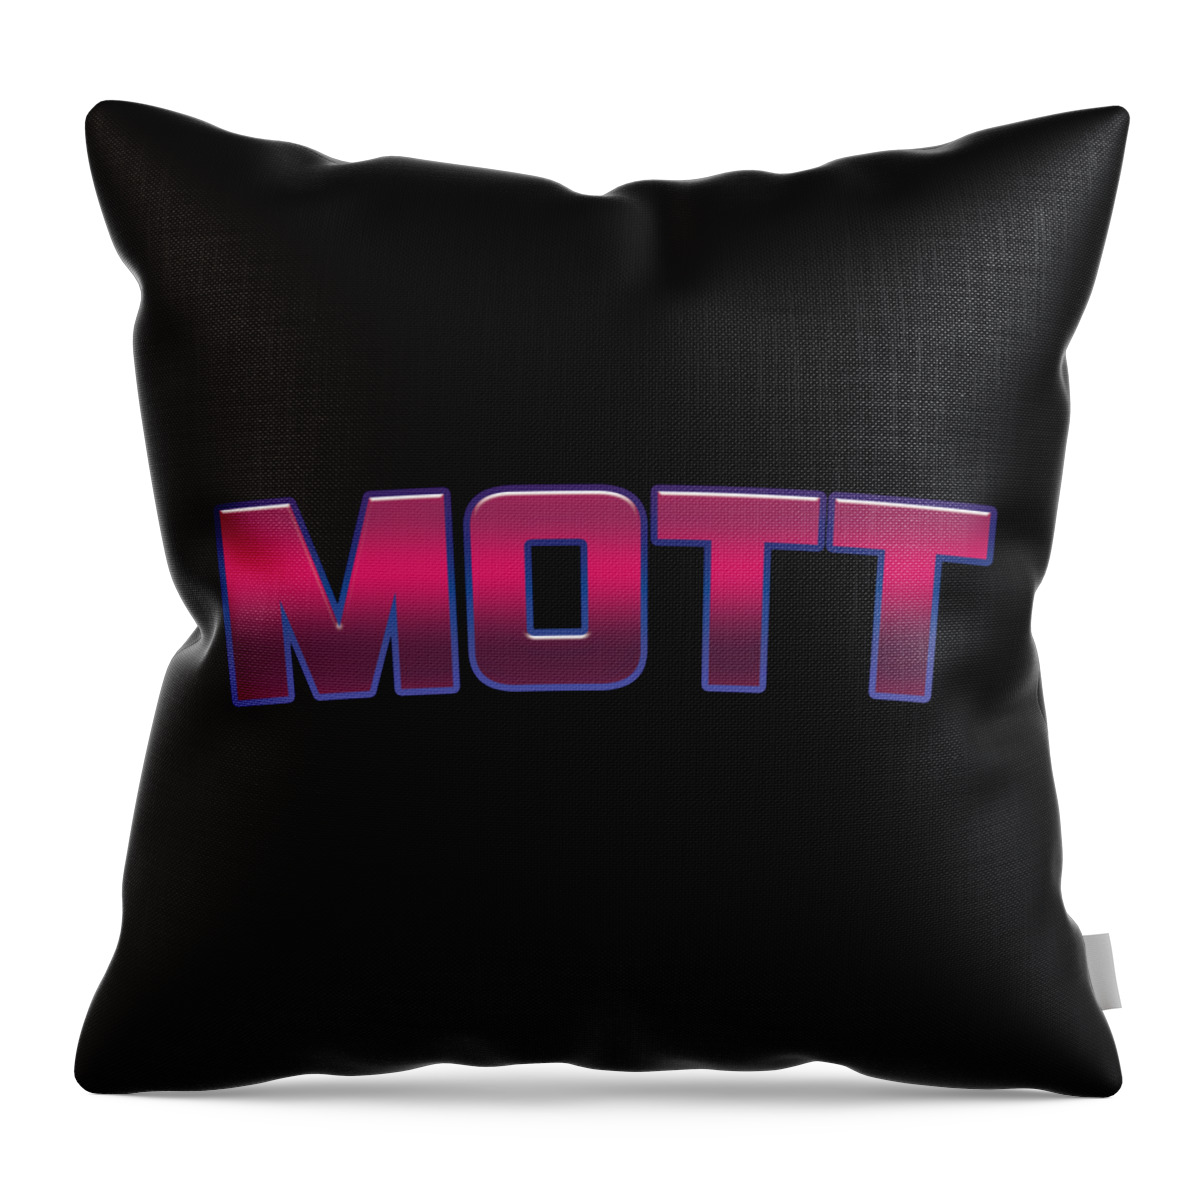 Mott Throw Pillow featuring the digital art Mott #Mott by TintoDesigns